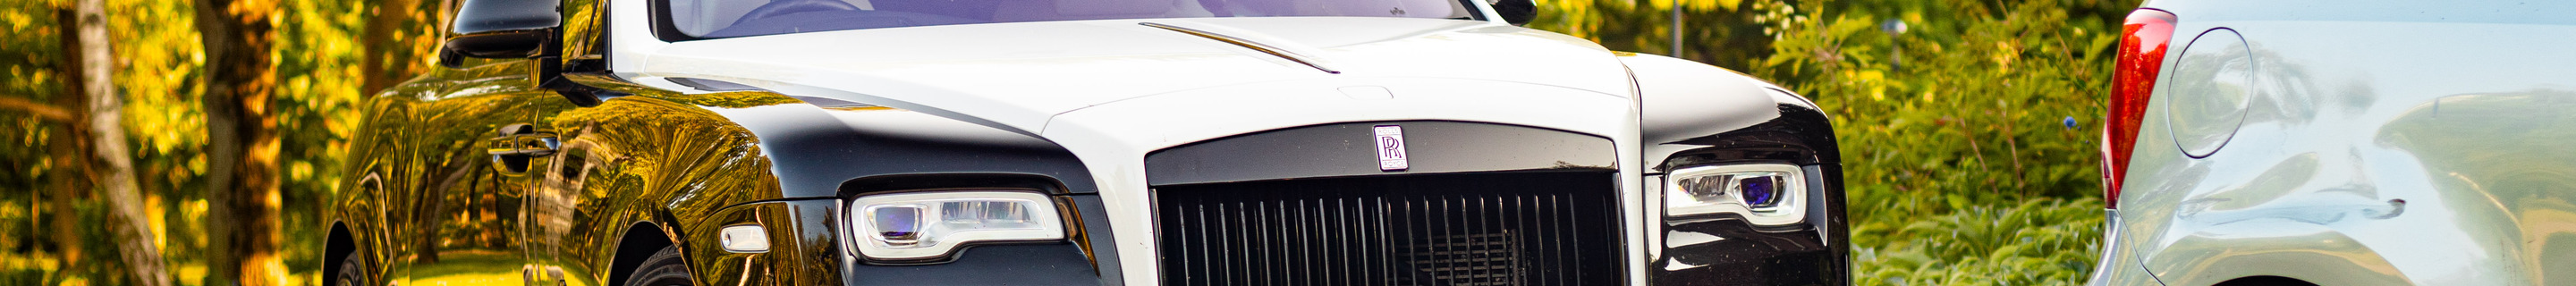 Rolls-Royce Dawn Onyx Concept